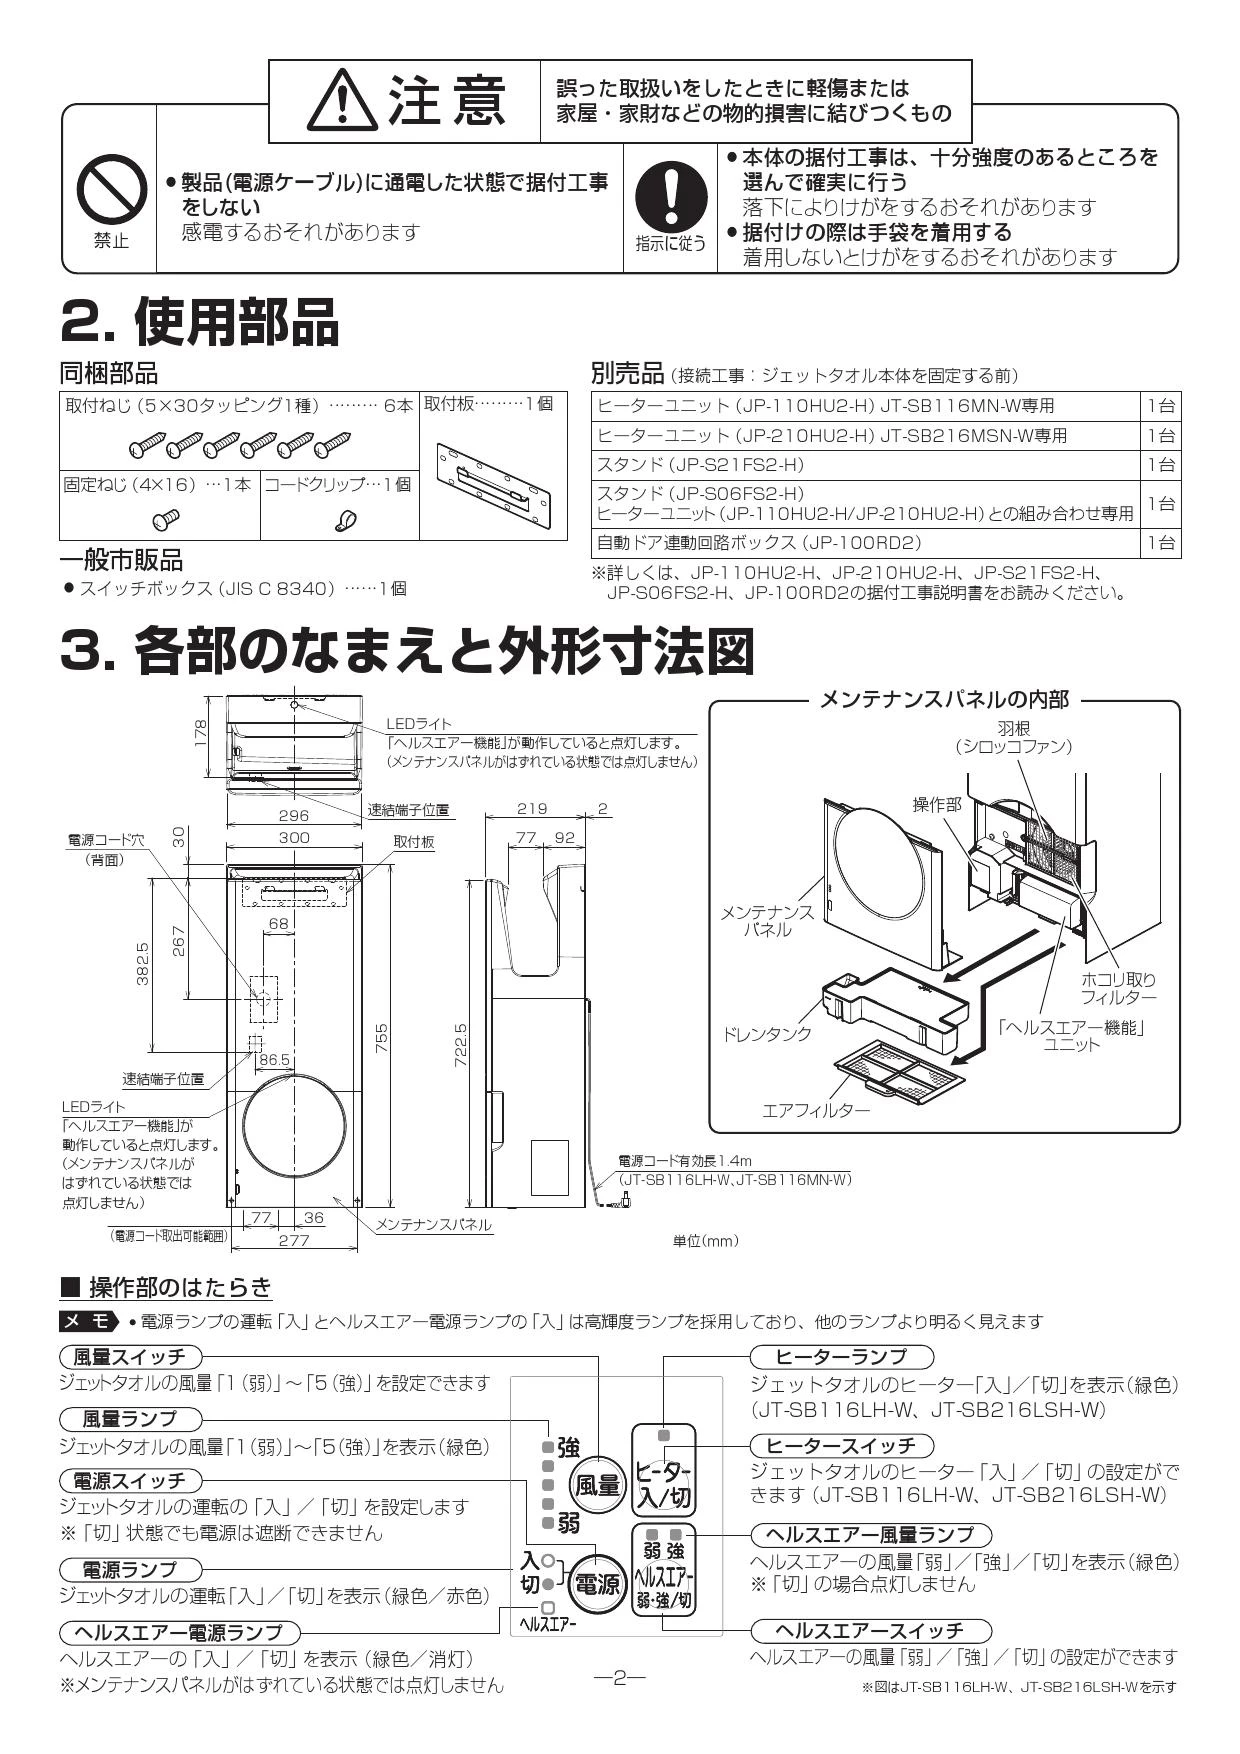 三菱電機 JT-SB116LH-W 取扱説明書 施工説明書 納入仕様図|三菱電機 ...